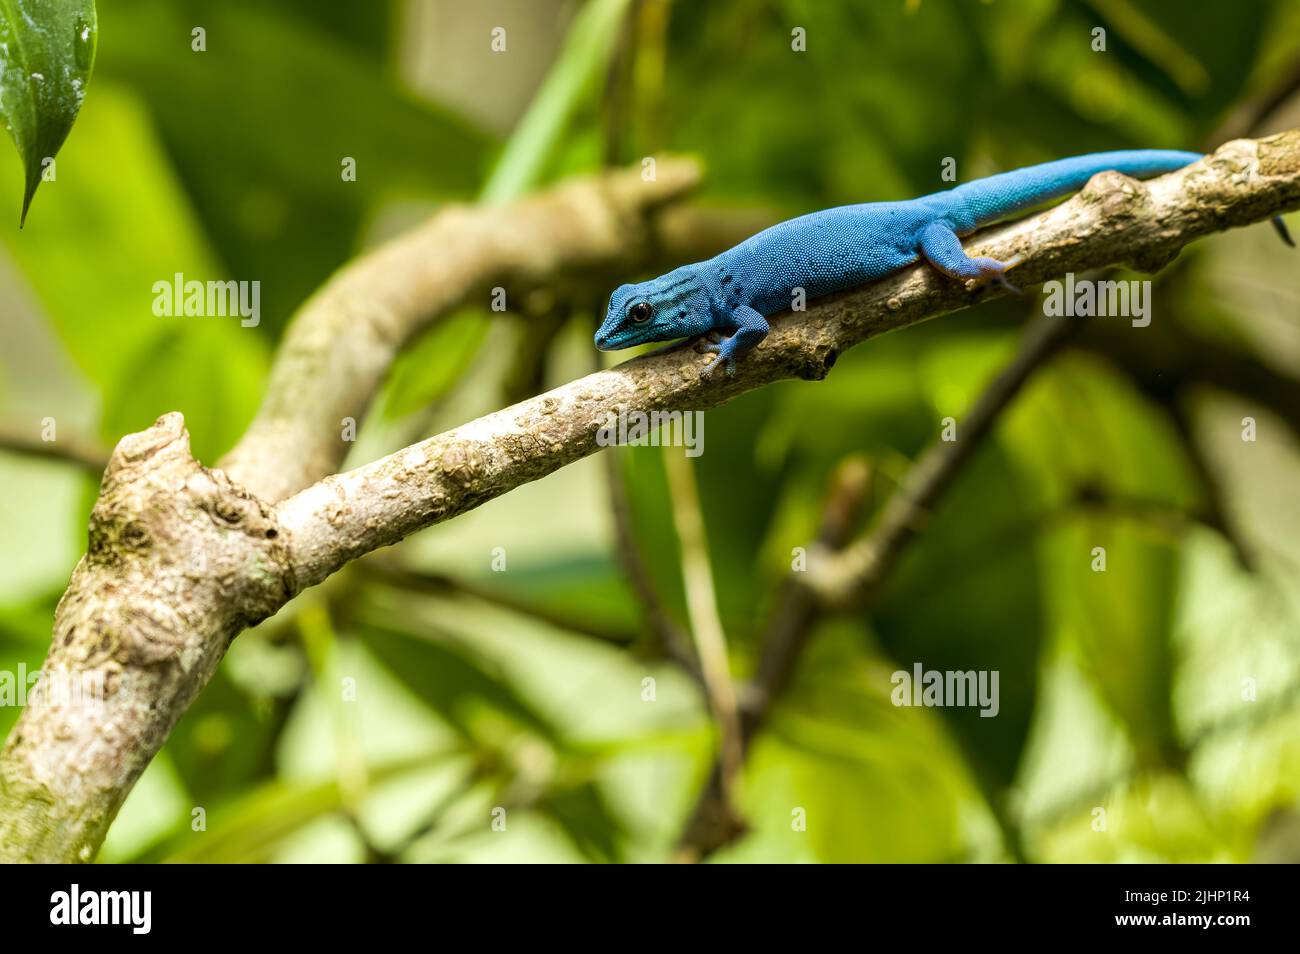 Lygodactylus williamsi, un gecko nain turquoise en danger critique d'extinction. Également connu sous le nom de gecko nain de William, ou gecko bleu électrique au zoo de Jersey. Banque D'Images